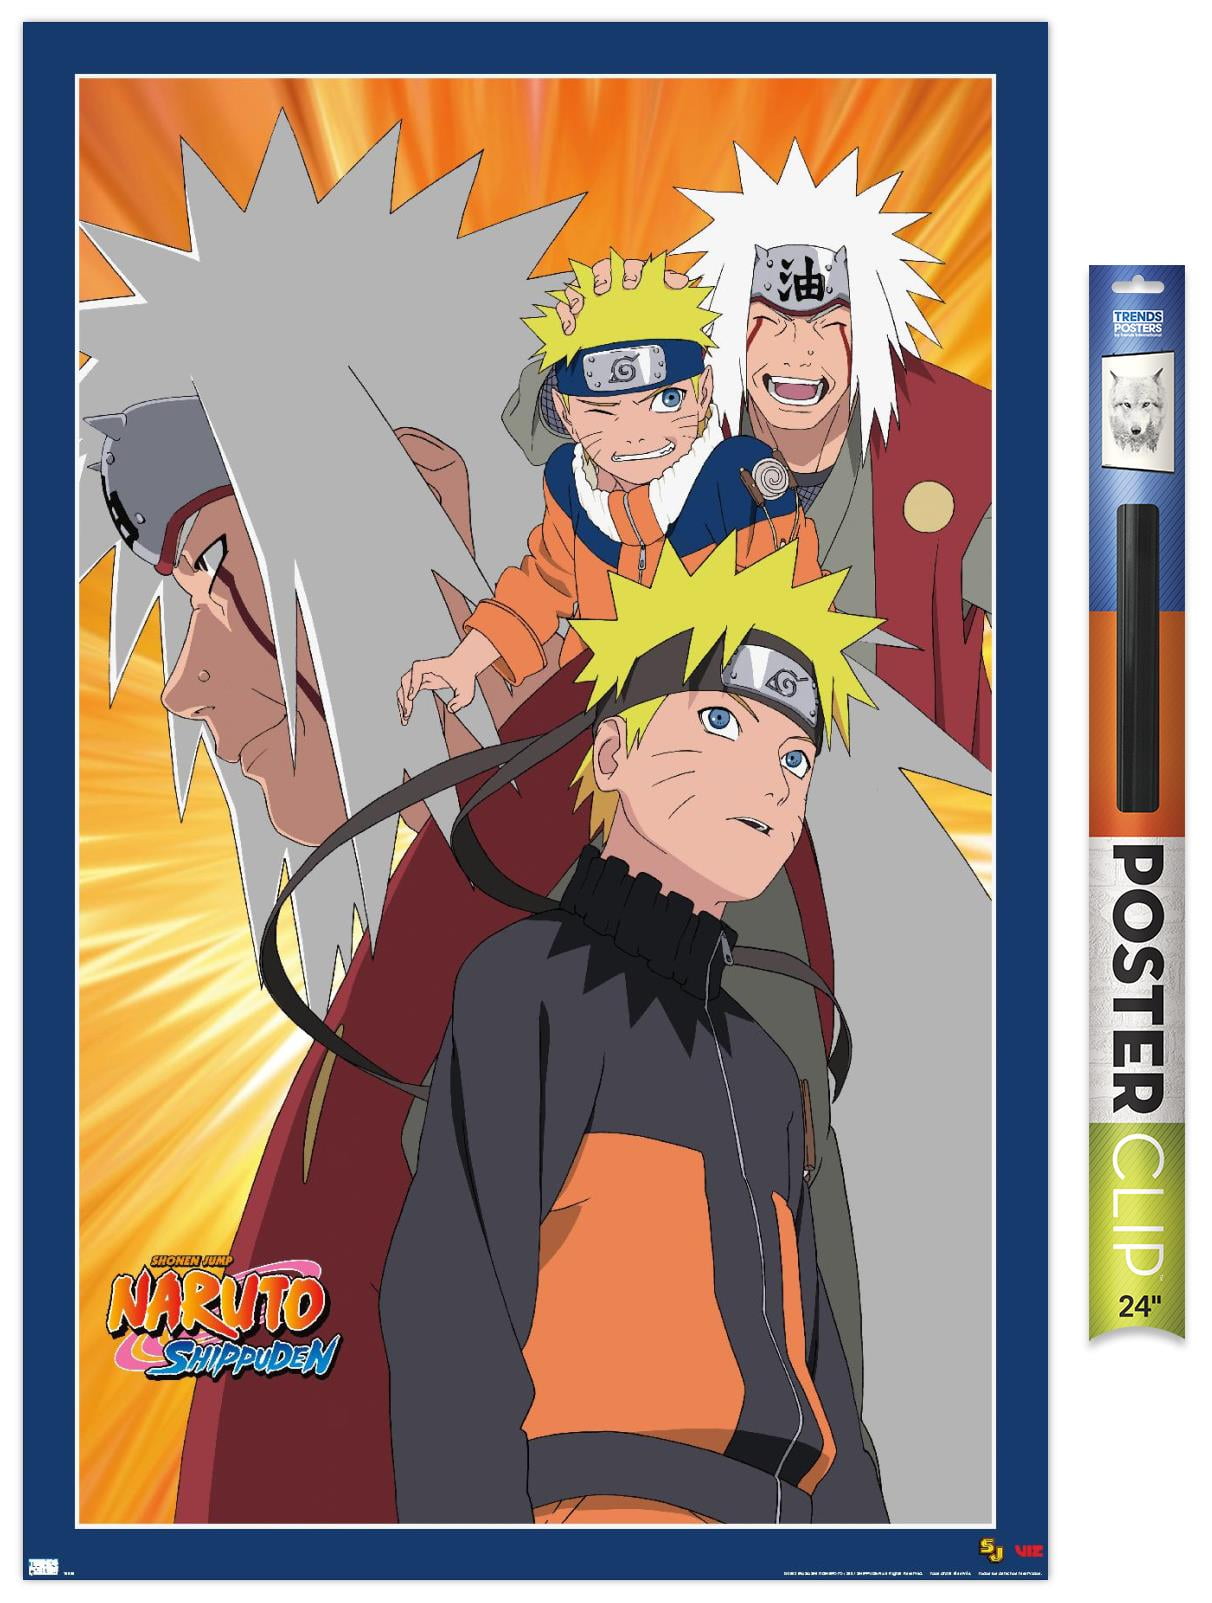 Jiraiya  Naruto images, Naruto, Naruto jiraiya